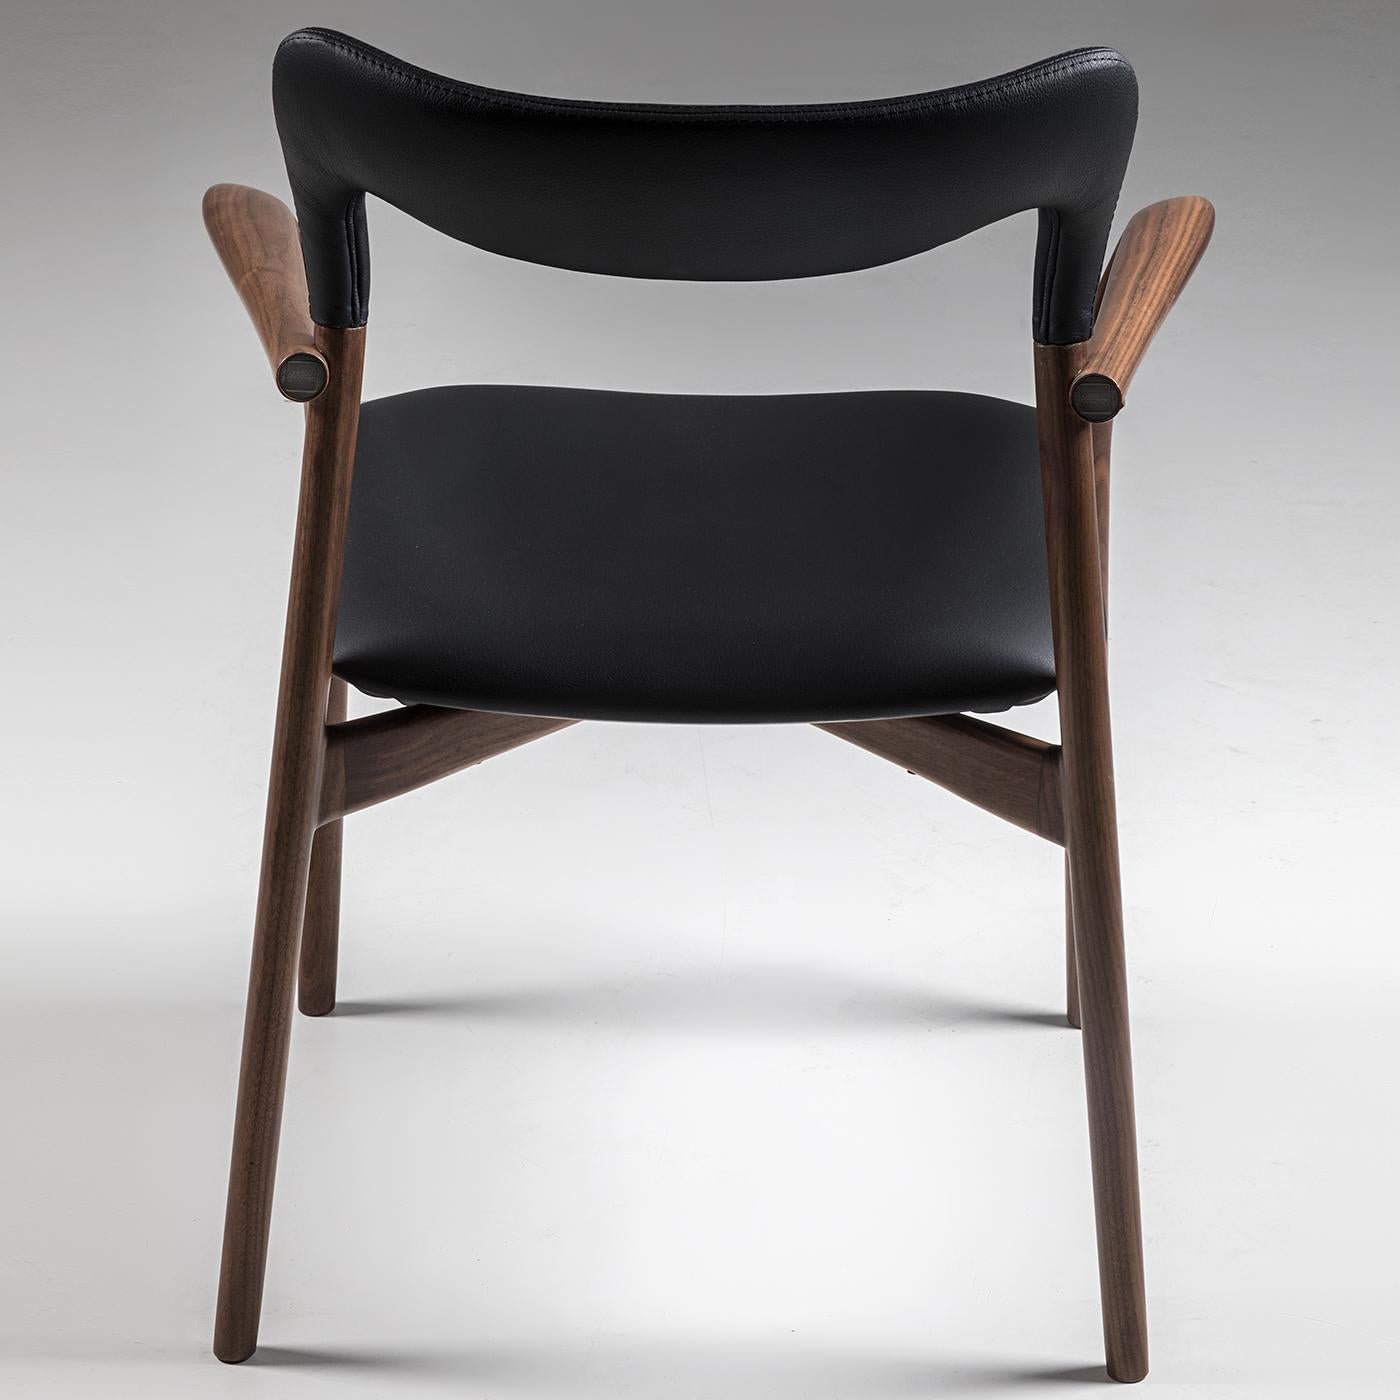 S'élevant au-dessus de toutes les tendances en matière de design, ce fauteuil s'imposera dans n'importe quel décor intérieur. Ses lignes gracieuses et ses bords arrondis soulignent le savoir-faire exquis qui caractérise la collection Kong.